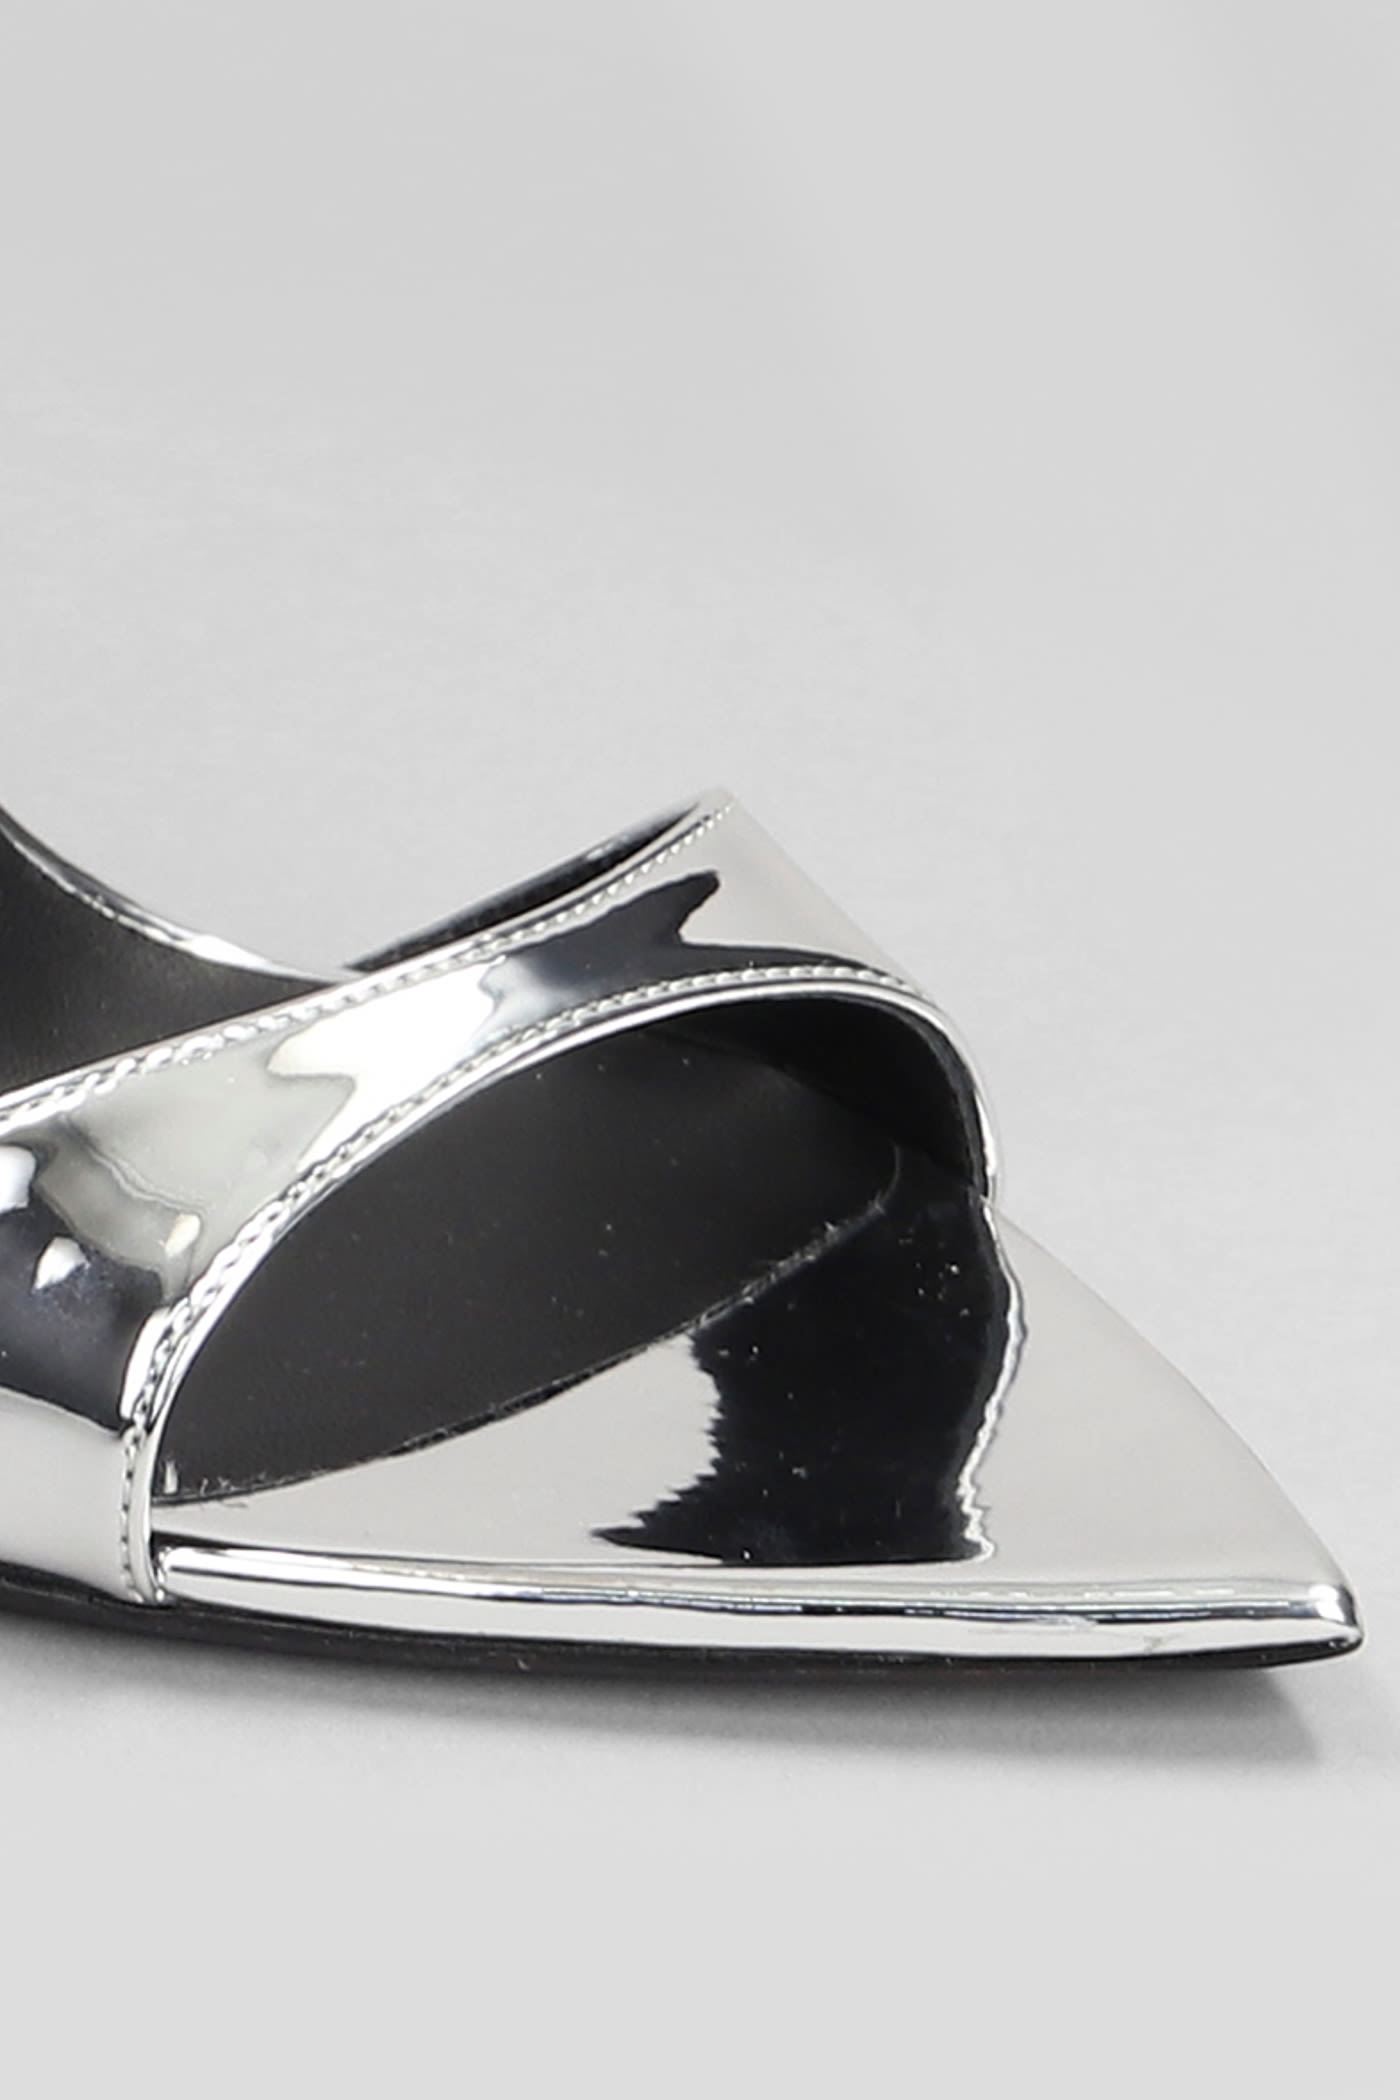 Shop Giuseppe Zanotti Intrigo Strap Sandals In Silver Patent Leather